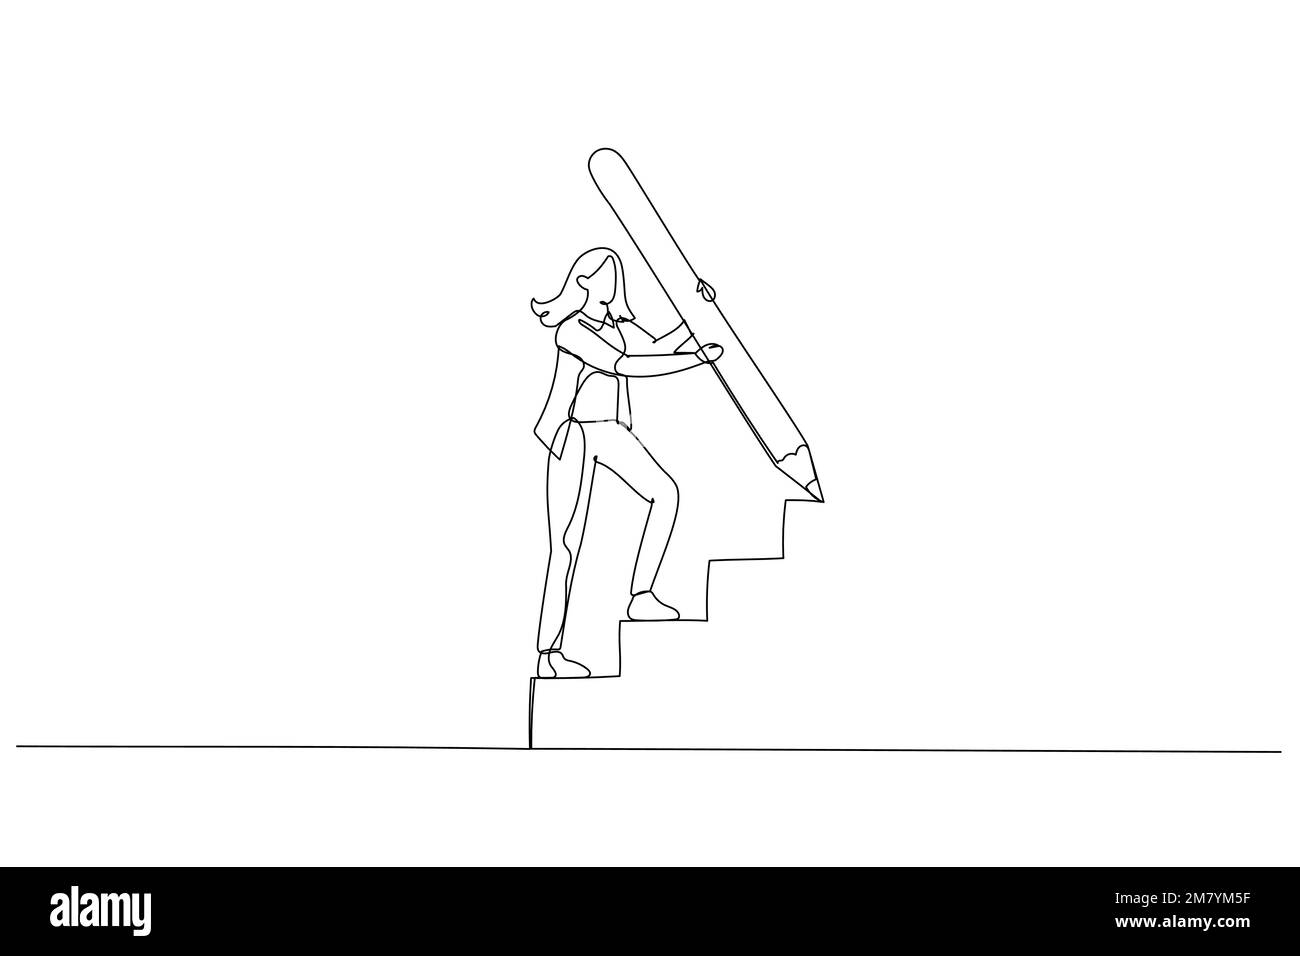 Cartone animato di uomo d'affari uso enorme matita disegnare scala scala arrampicata su scala concetto di sviluppo di business. Design di stile artistico a linea singola Illustrazione Vettoriale